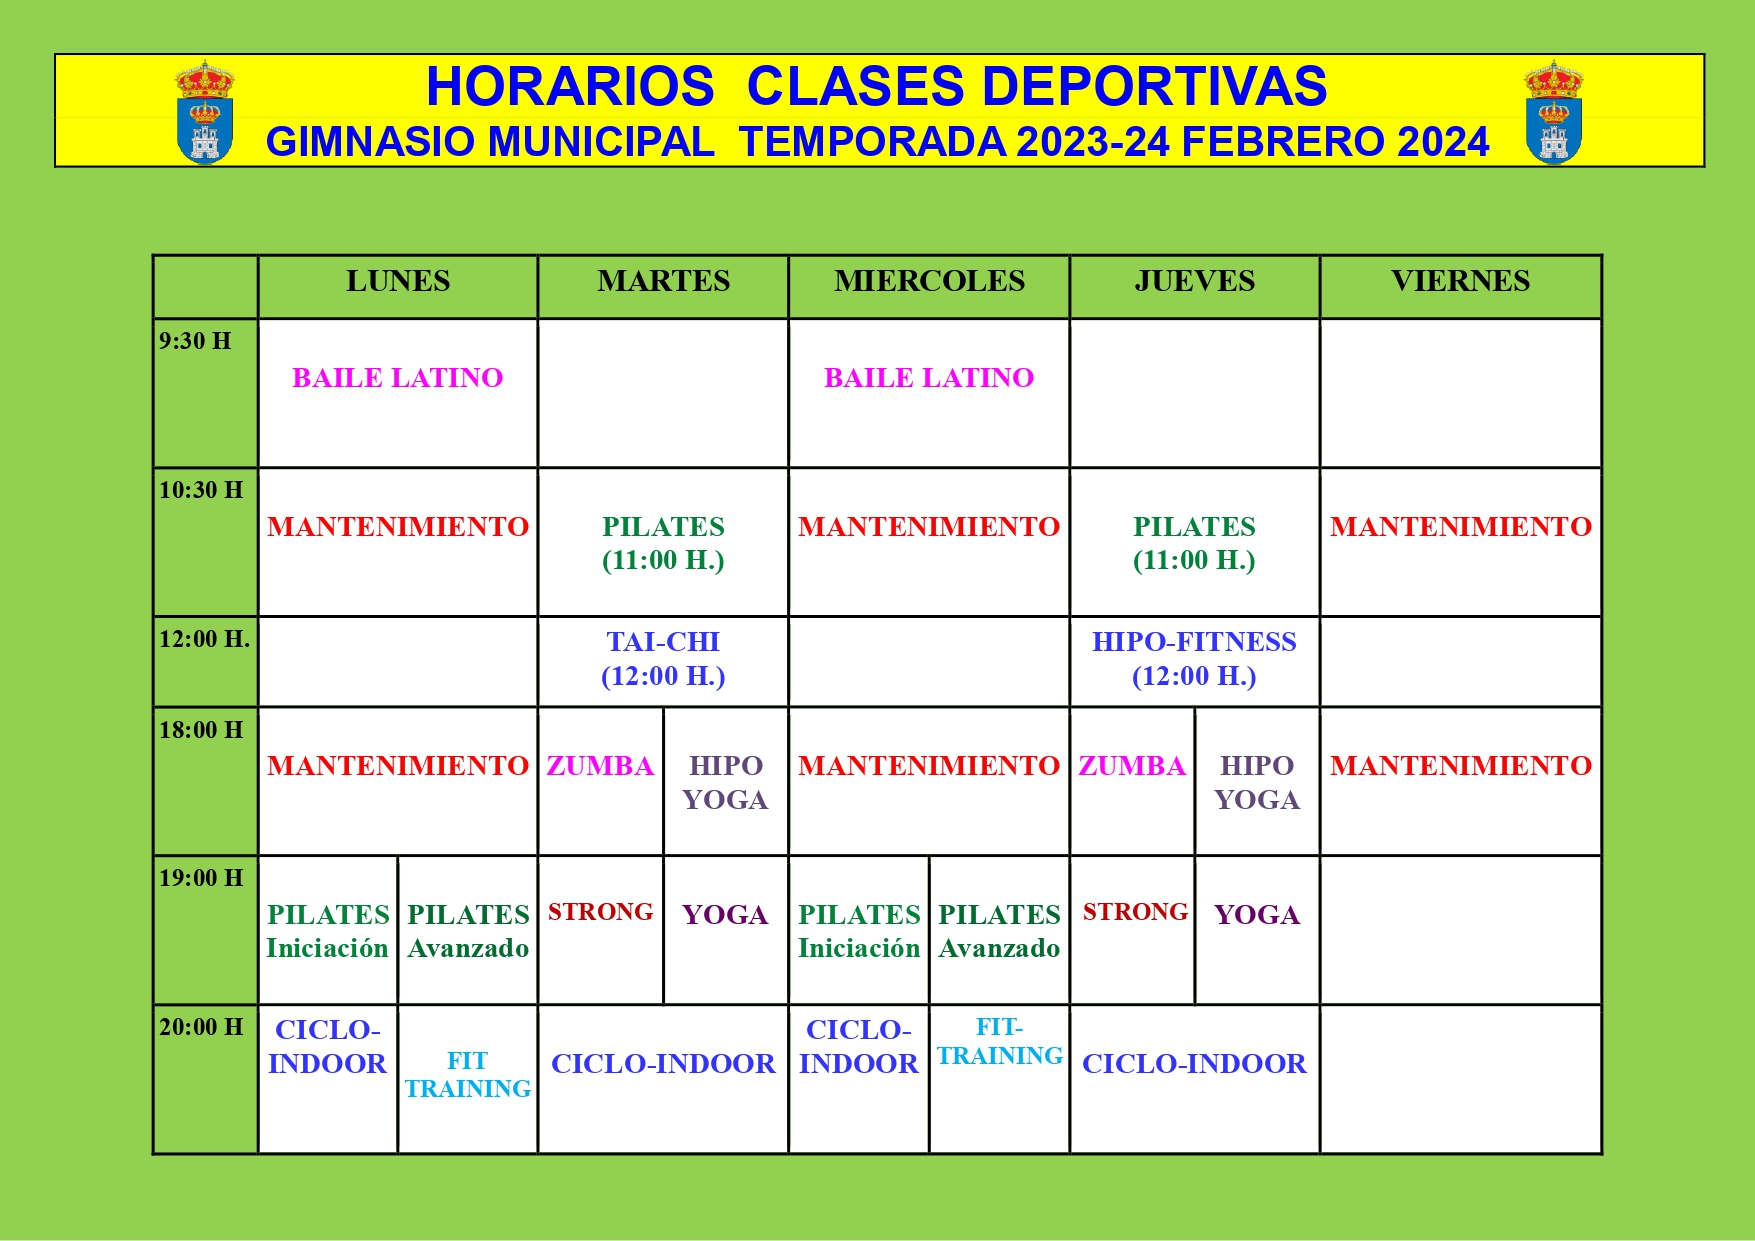 CUADRANTE CLASES DEPORTIVAS TEMPORADA 2023 24 FEBRERO 2024 page 0001